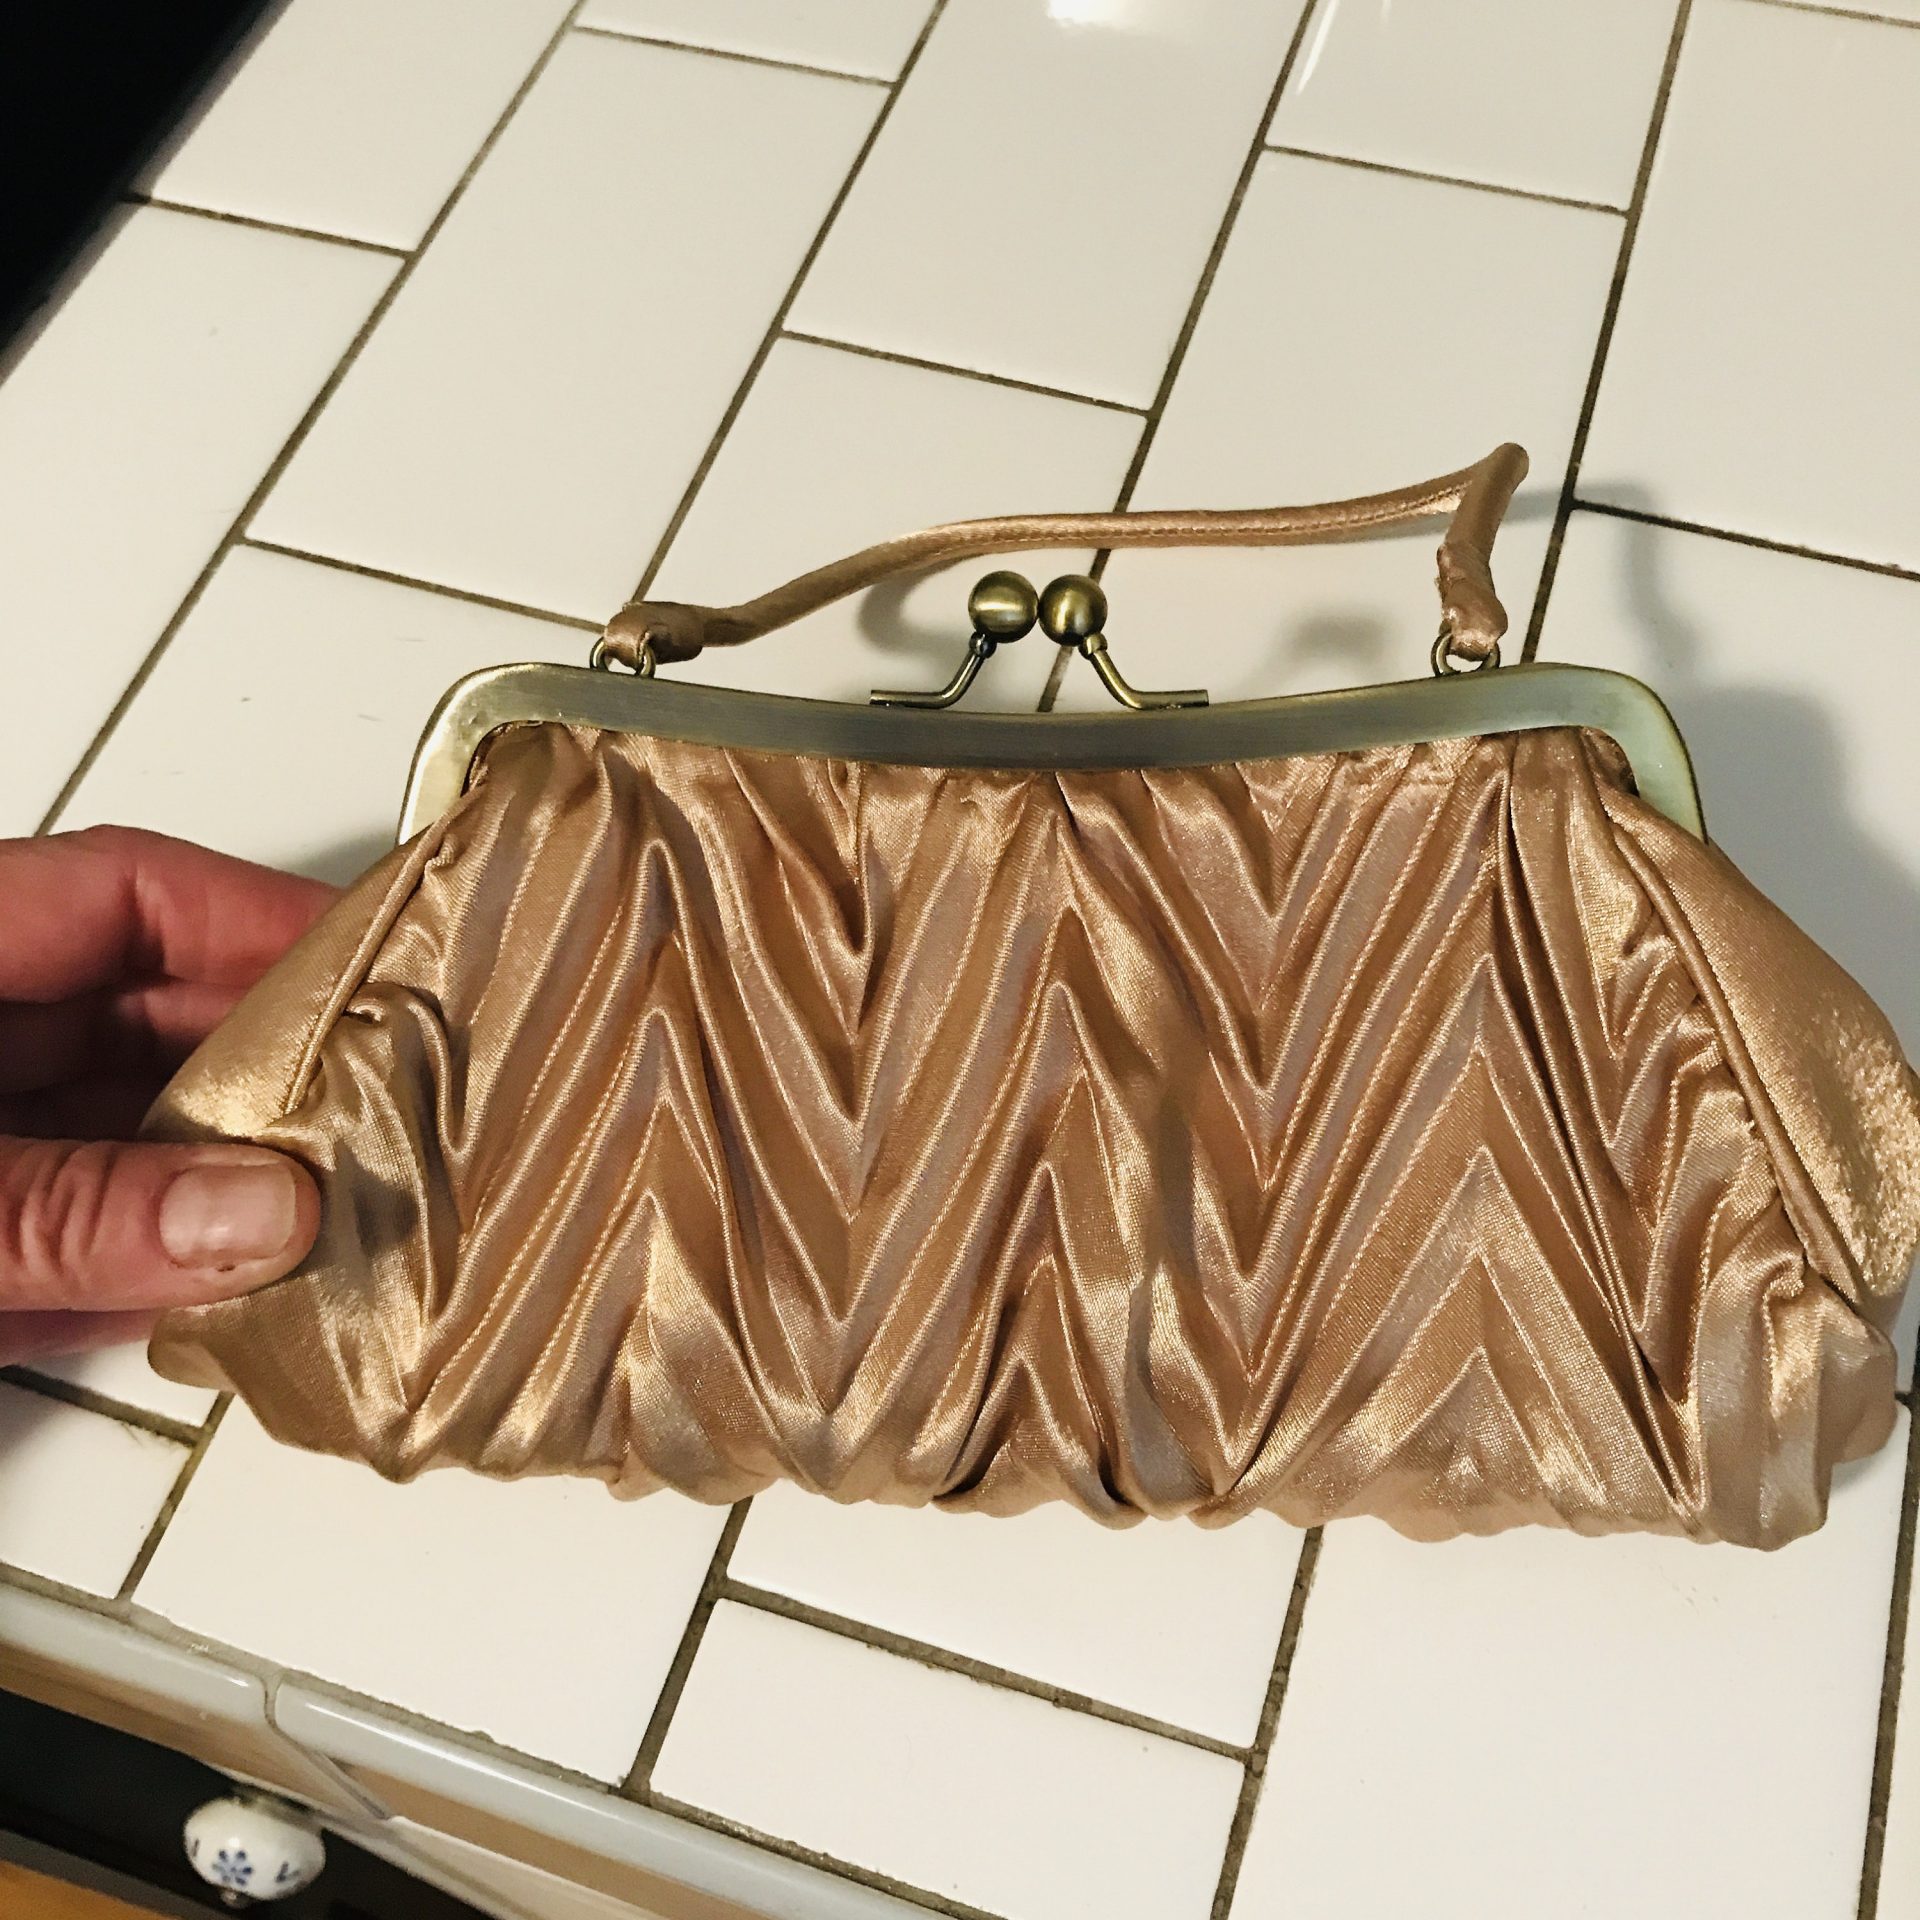 Vintage purse handles for crochet knit patchwork bag making | Purse handles,  Patchwork bags, Vintage purse